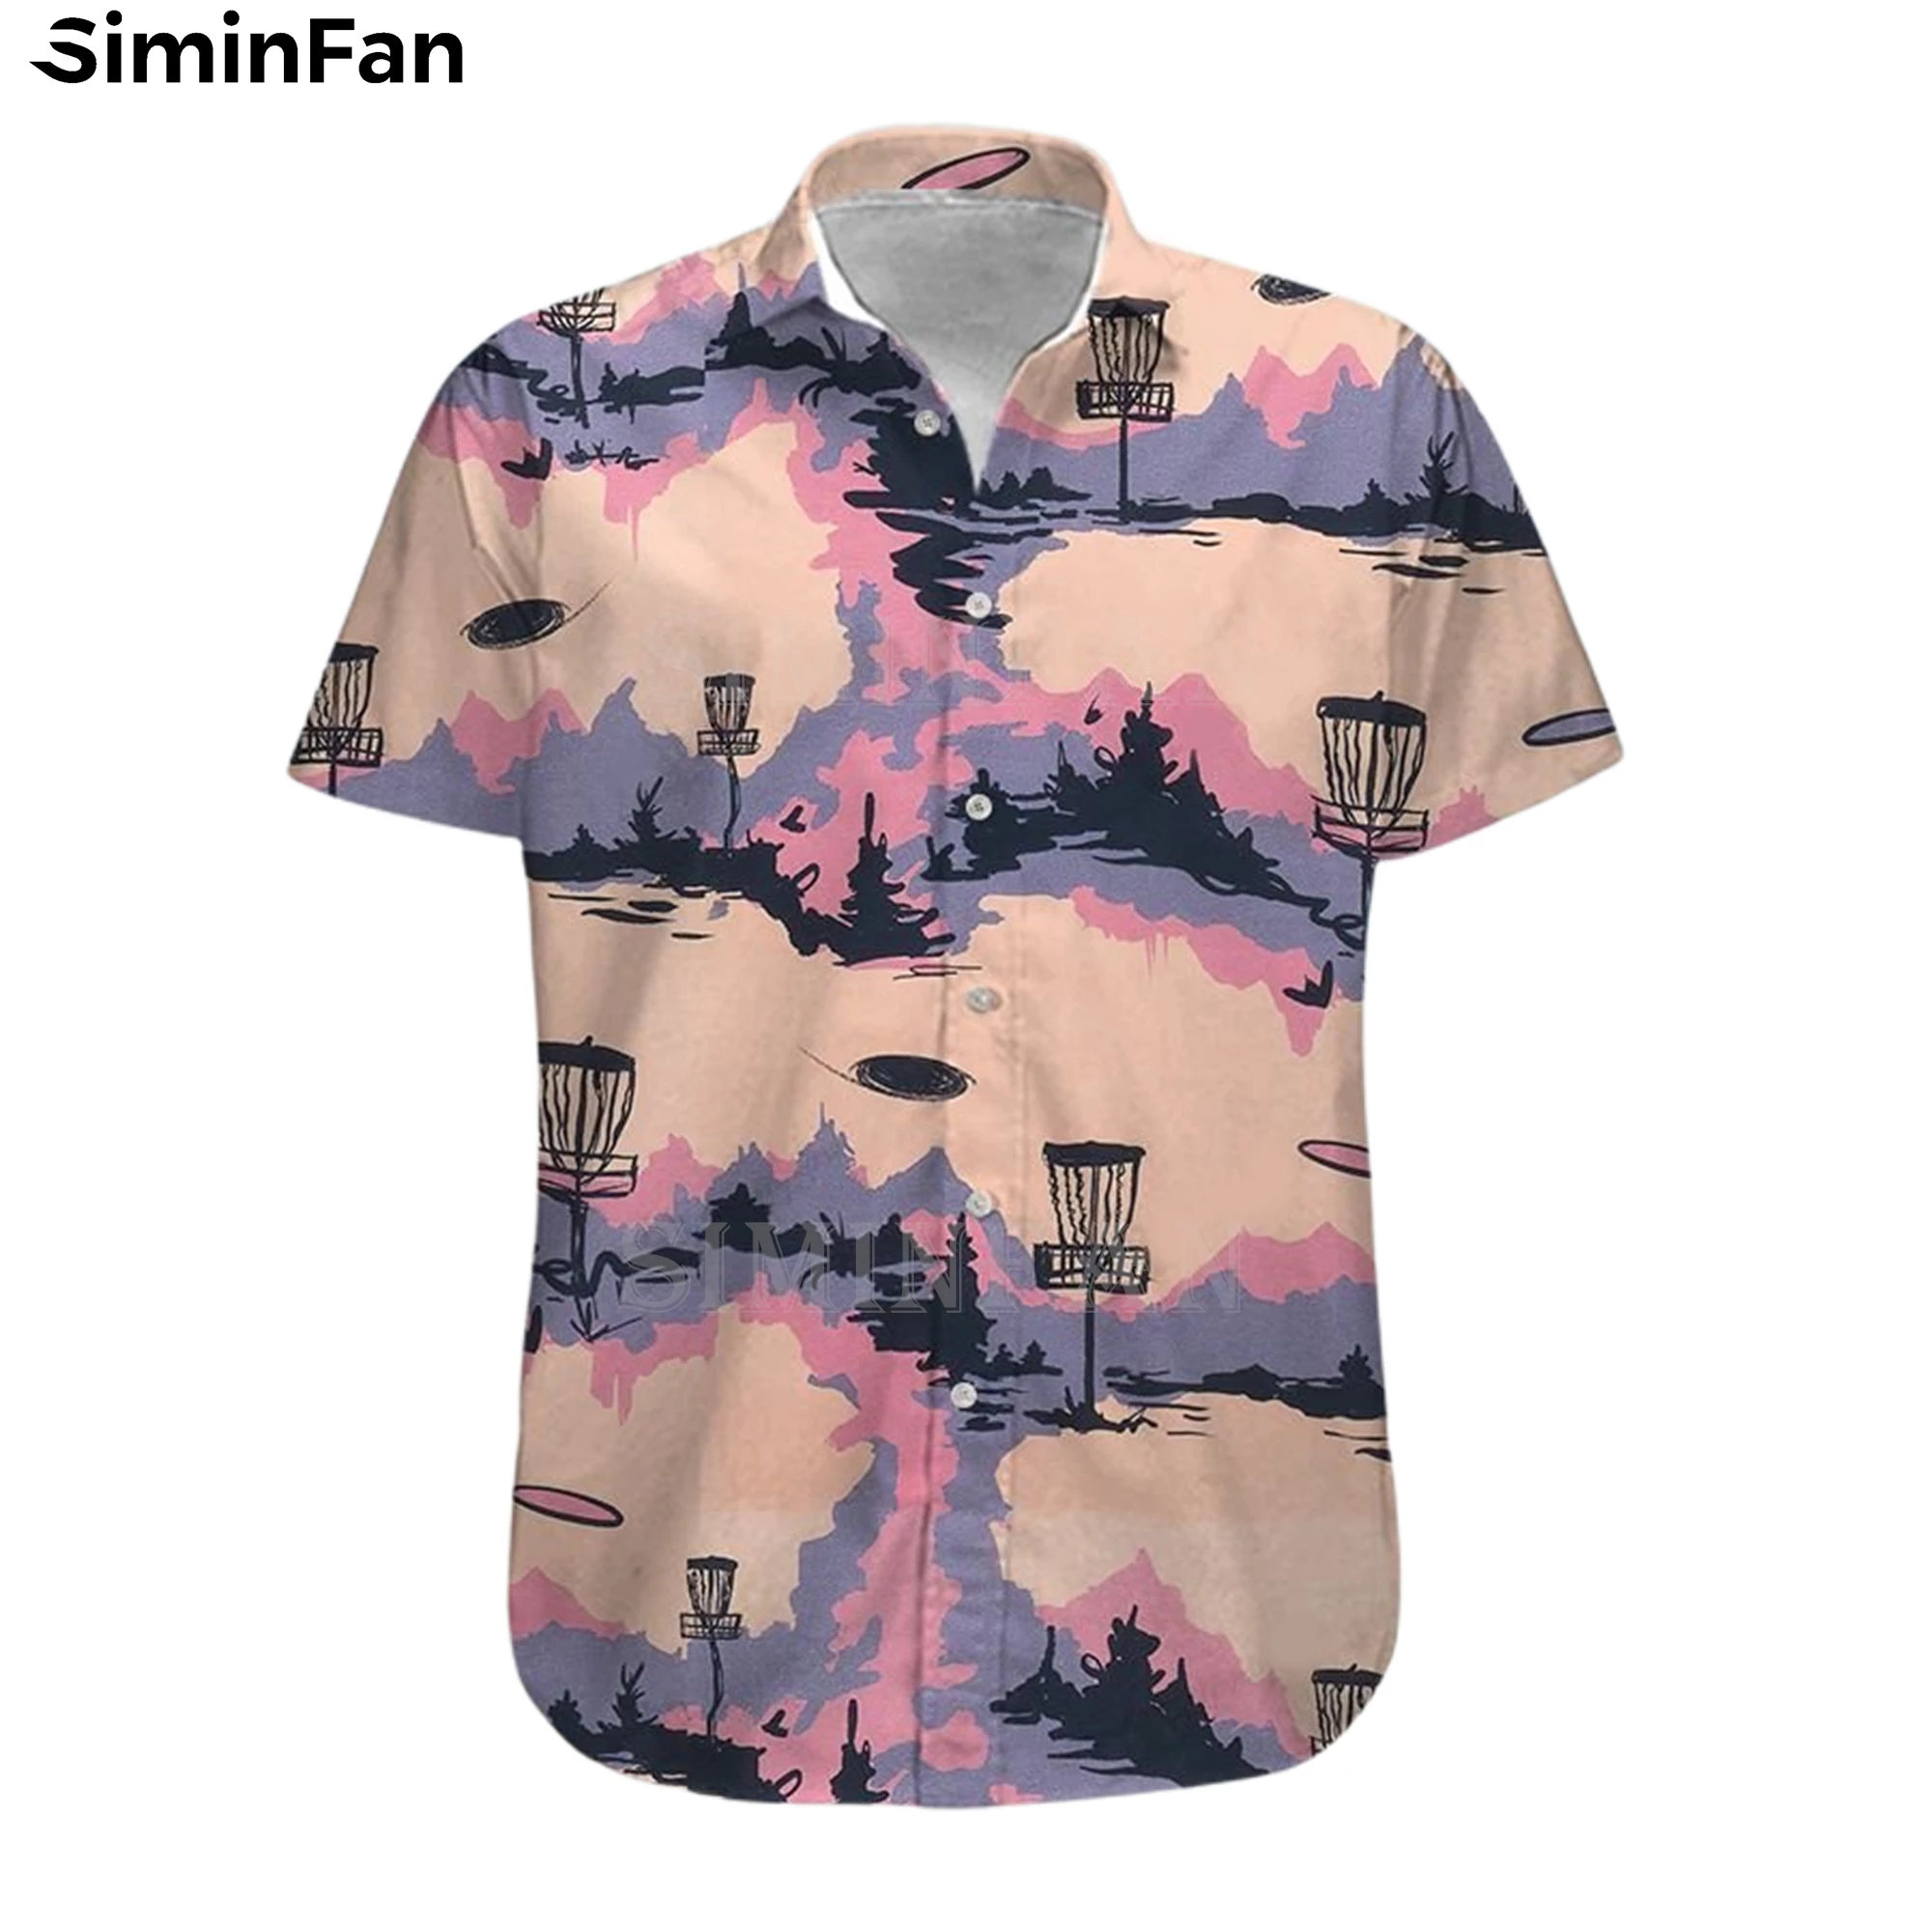 Гавайская футболка с 3D принтом для мужчин, роскошная пляжная рубашка с рисунком диска для гольфа, праздничная модная футболка унисекс, Розо...